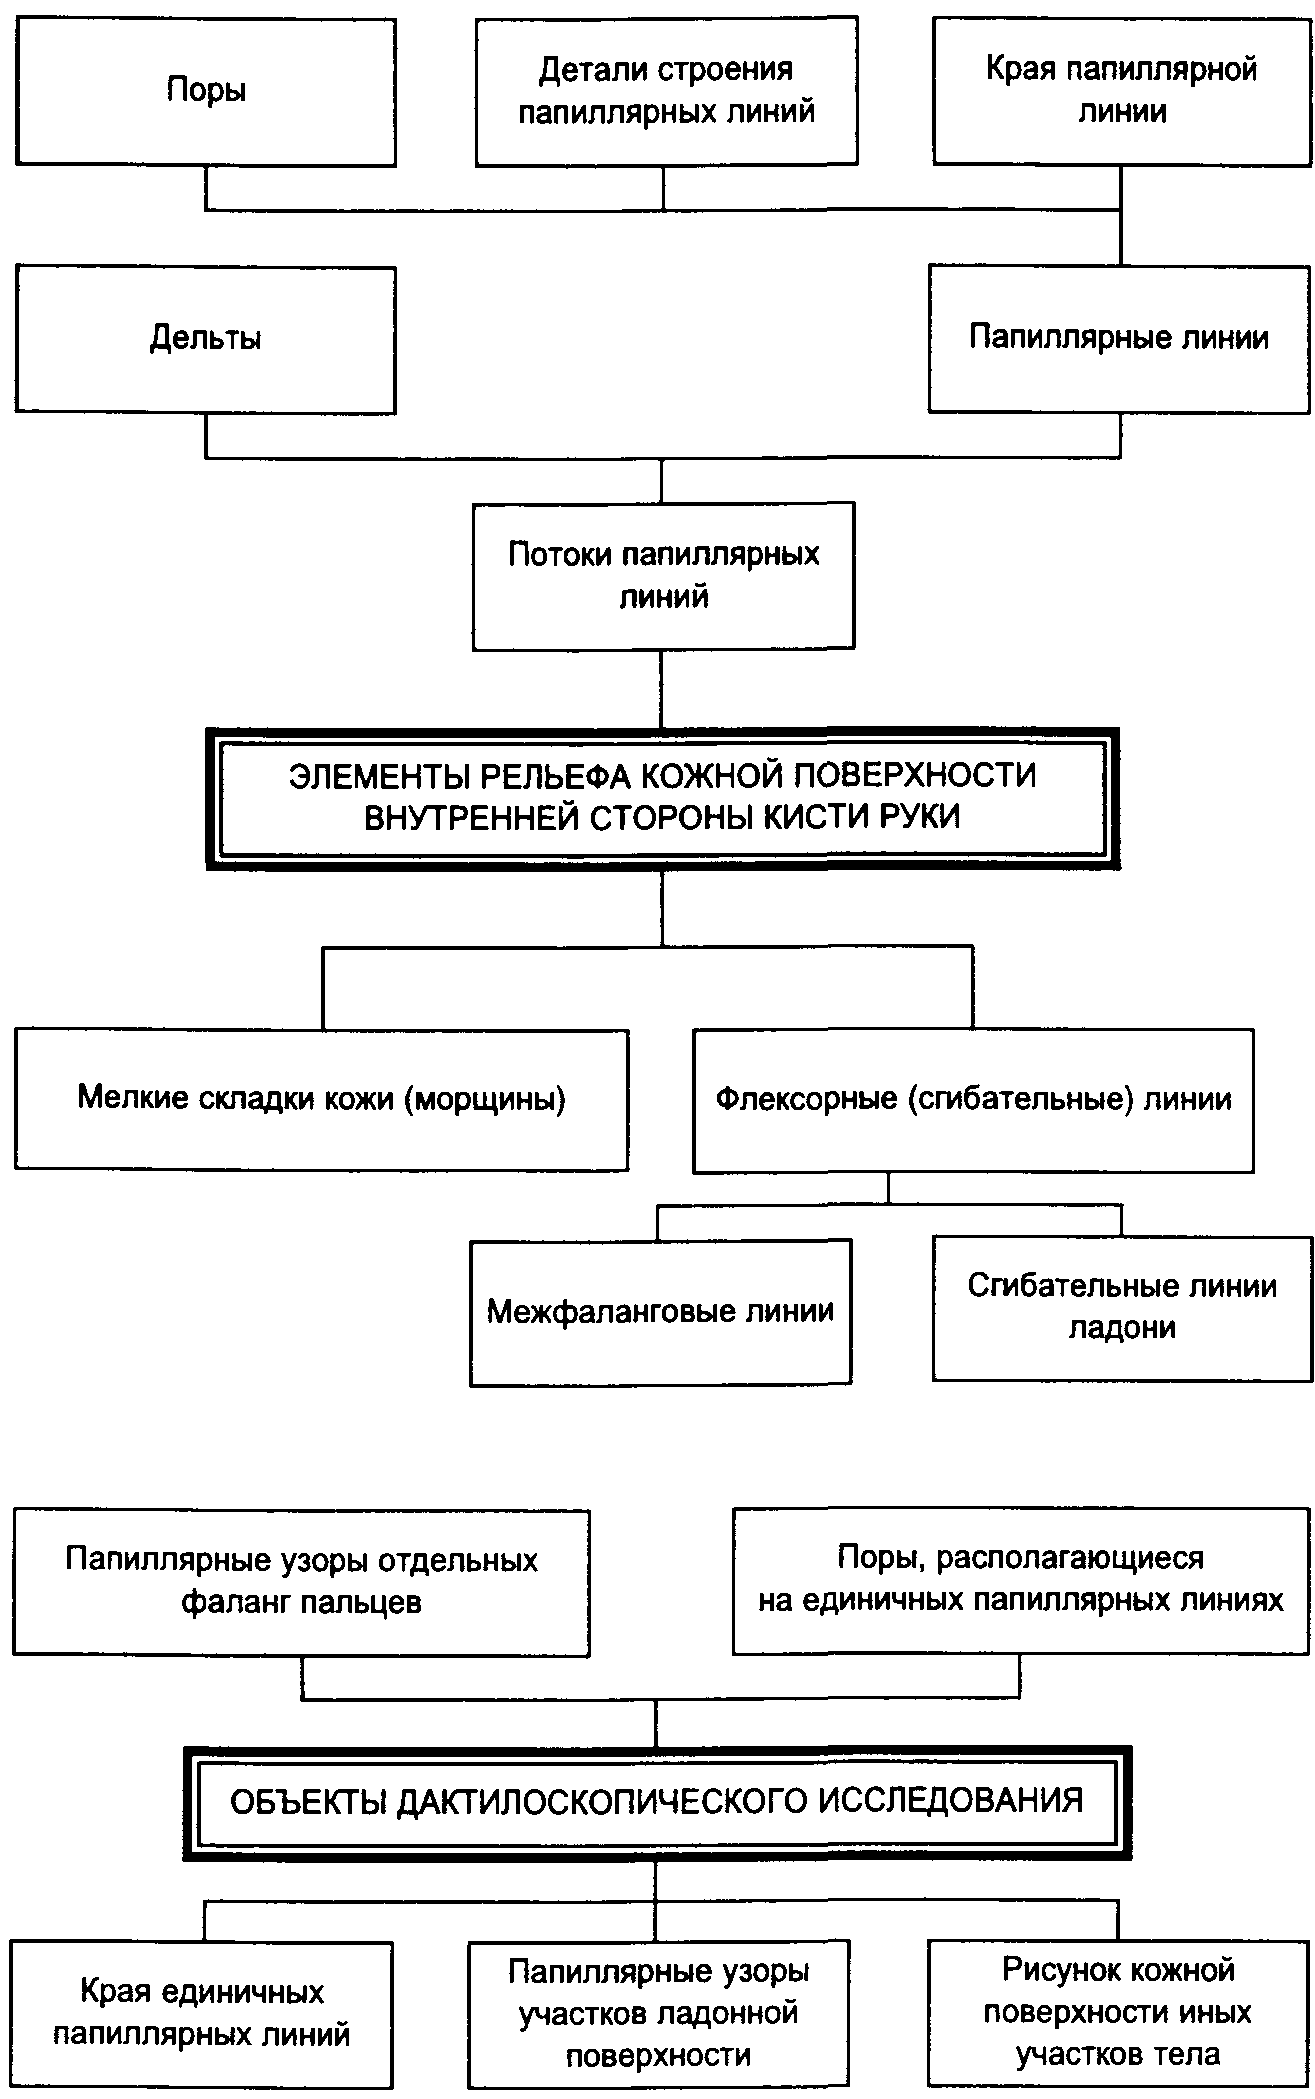 Система трасологии схема